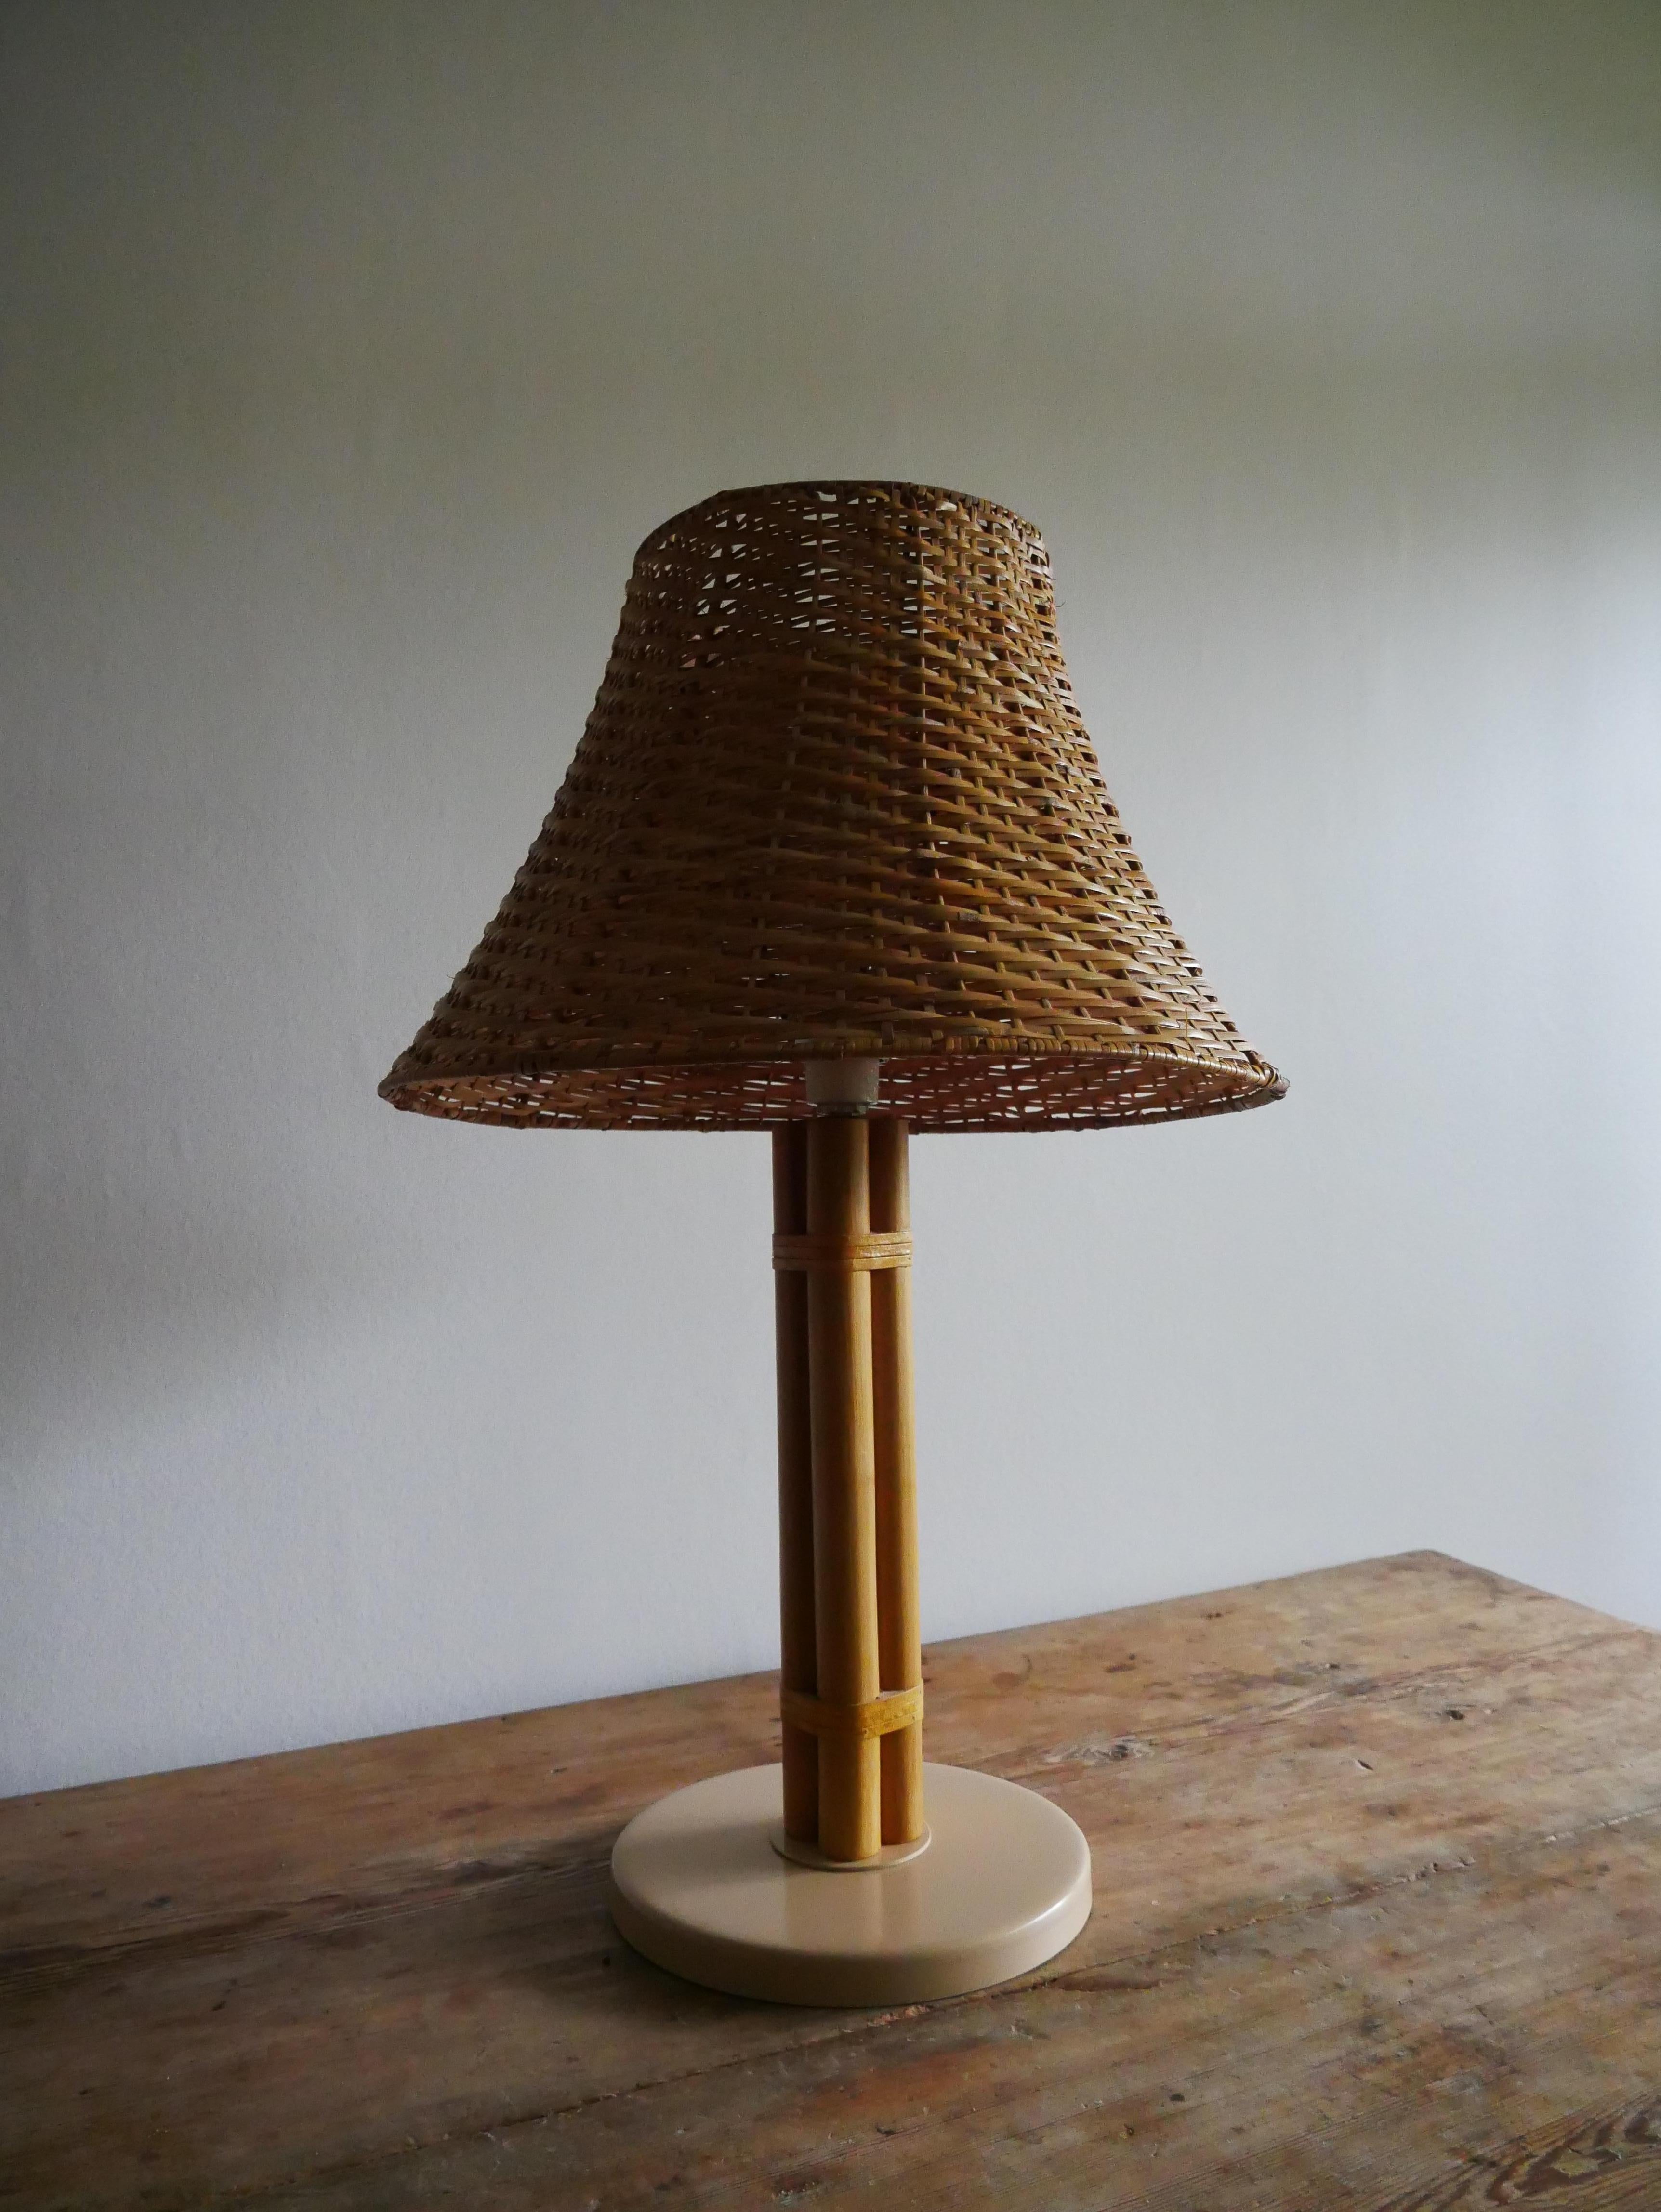 Lampe de table scandinave du milieu du siècle en laiton et bambou par Bergboms, Suède, années 1960.

Modèle B-105.

Cette lampe est fabriquée en bambou avec des détails en cuir.

La lampe est livrée avec un abat-jour en rotin.